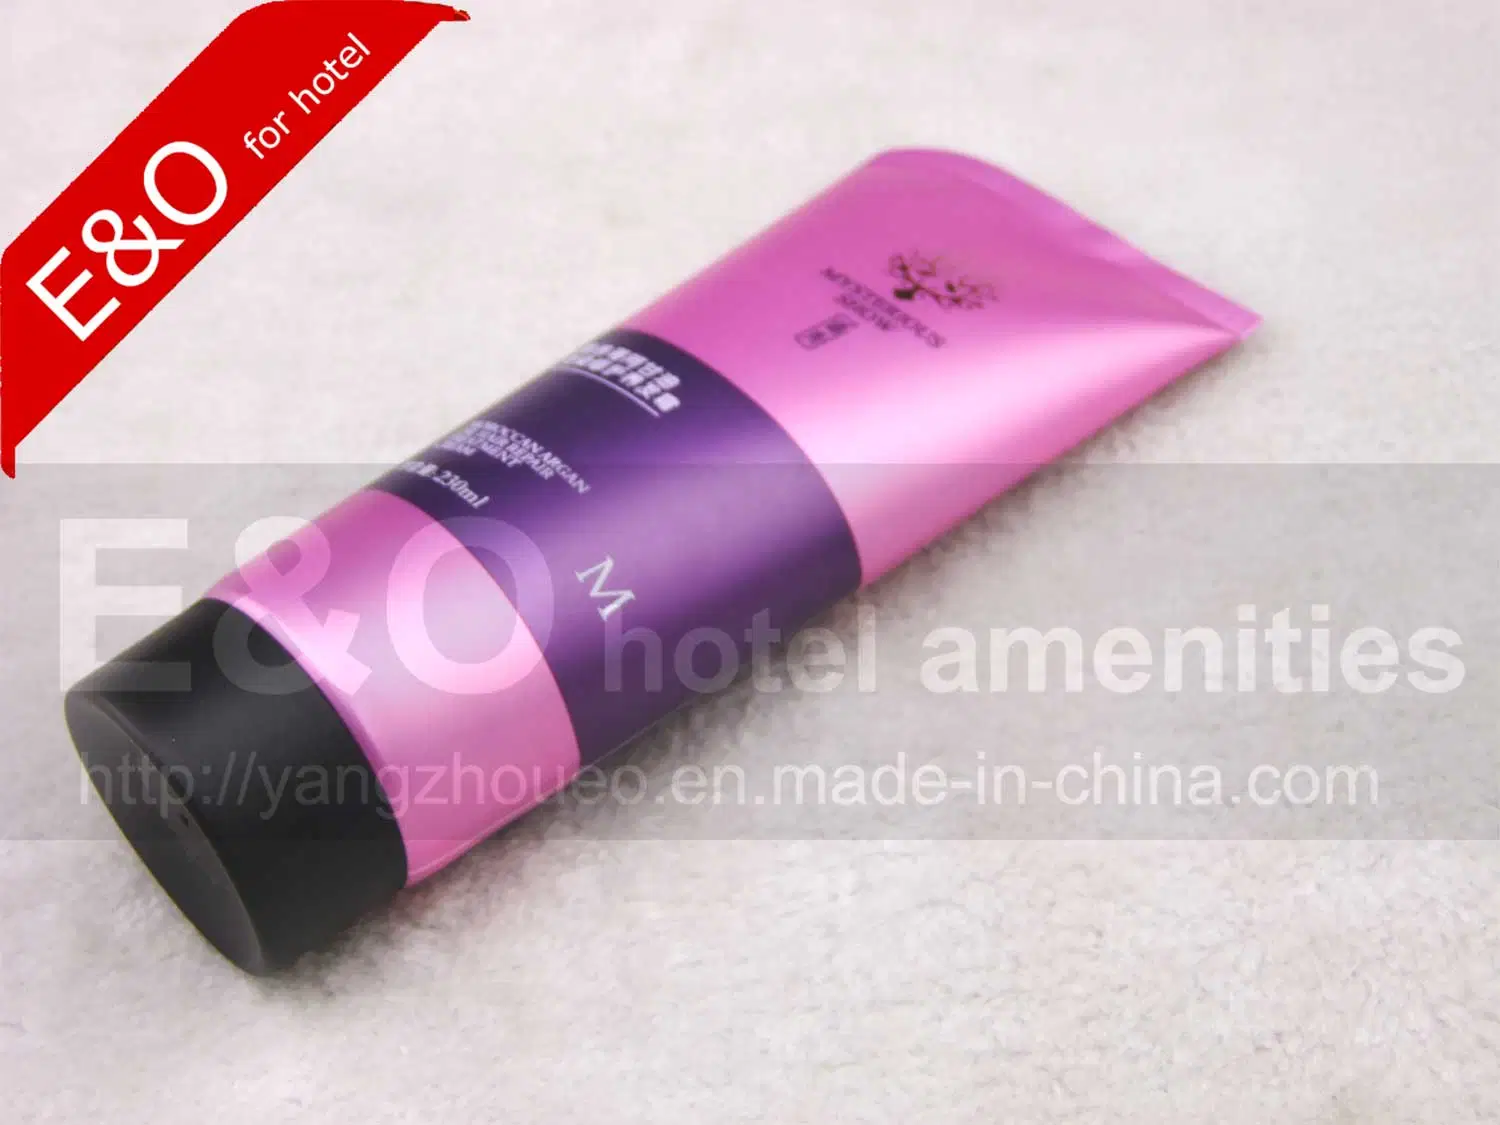 Tubos de plástico de 230 ml de tubos de cosméticos apriete el tubo de cuidado del cabello tubos